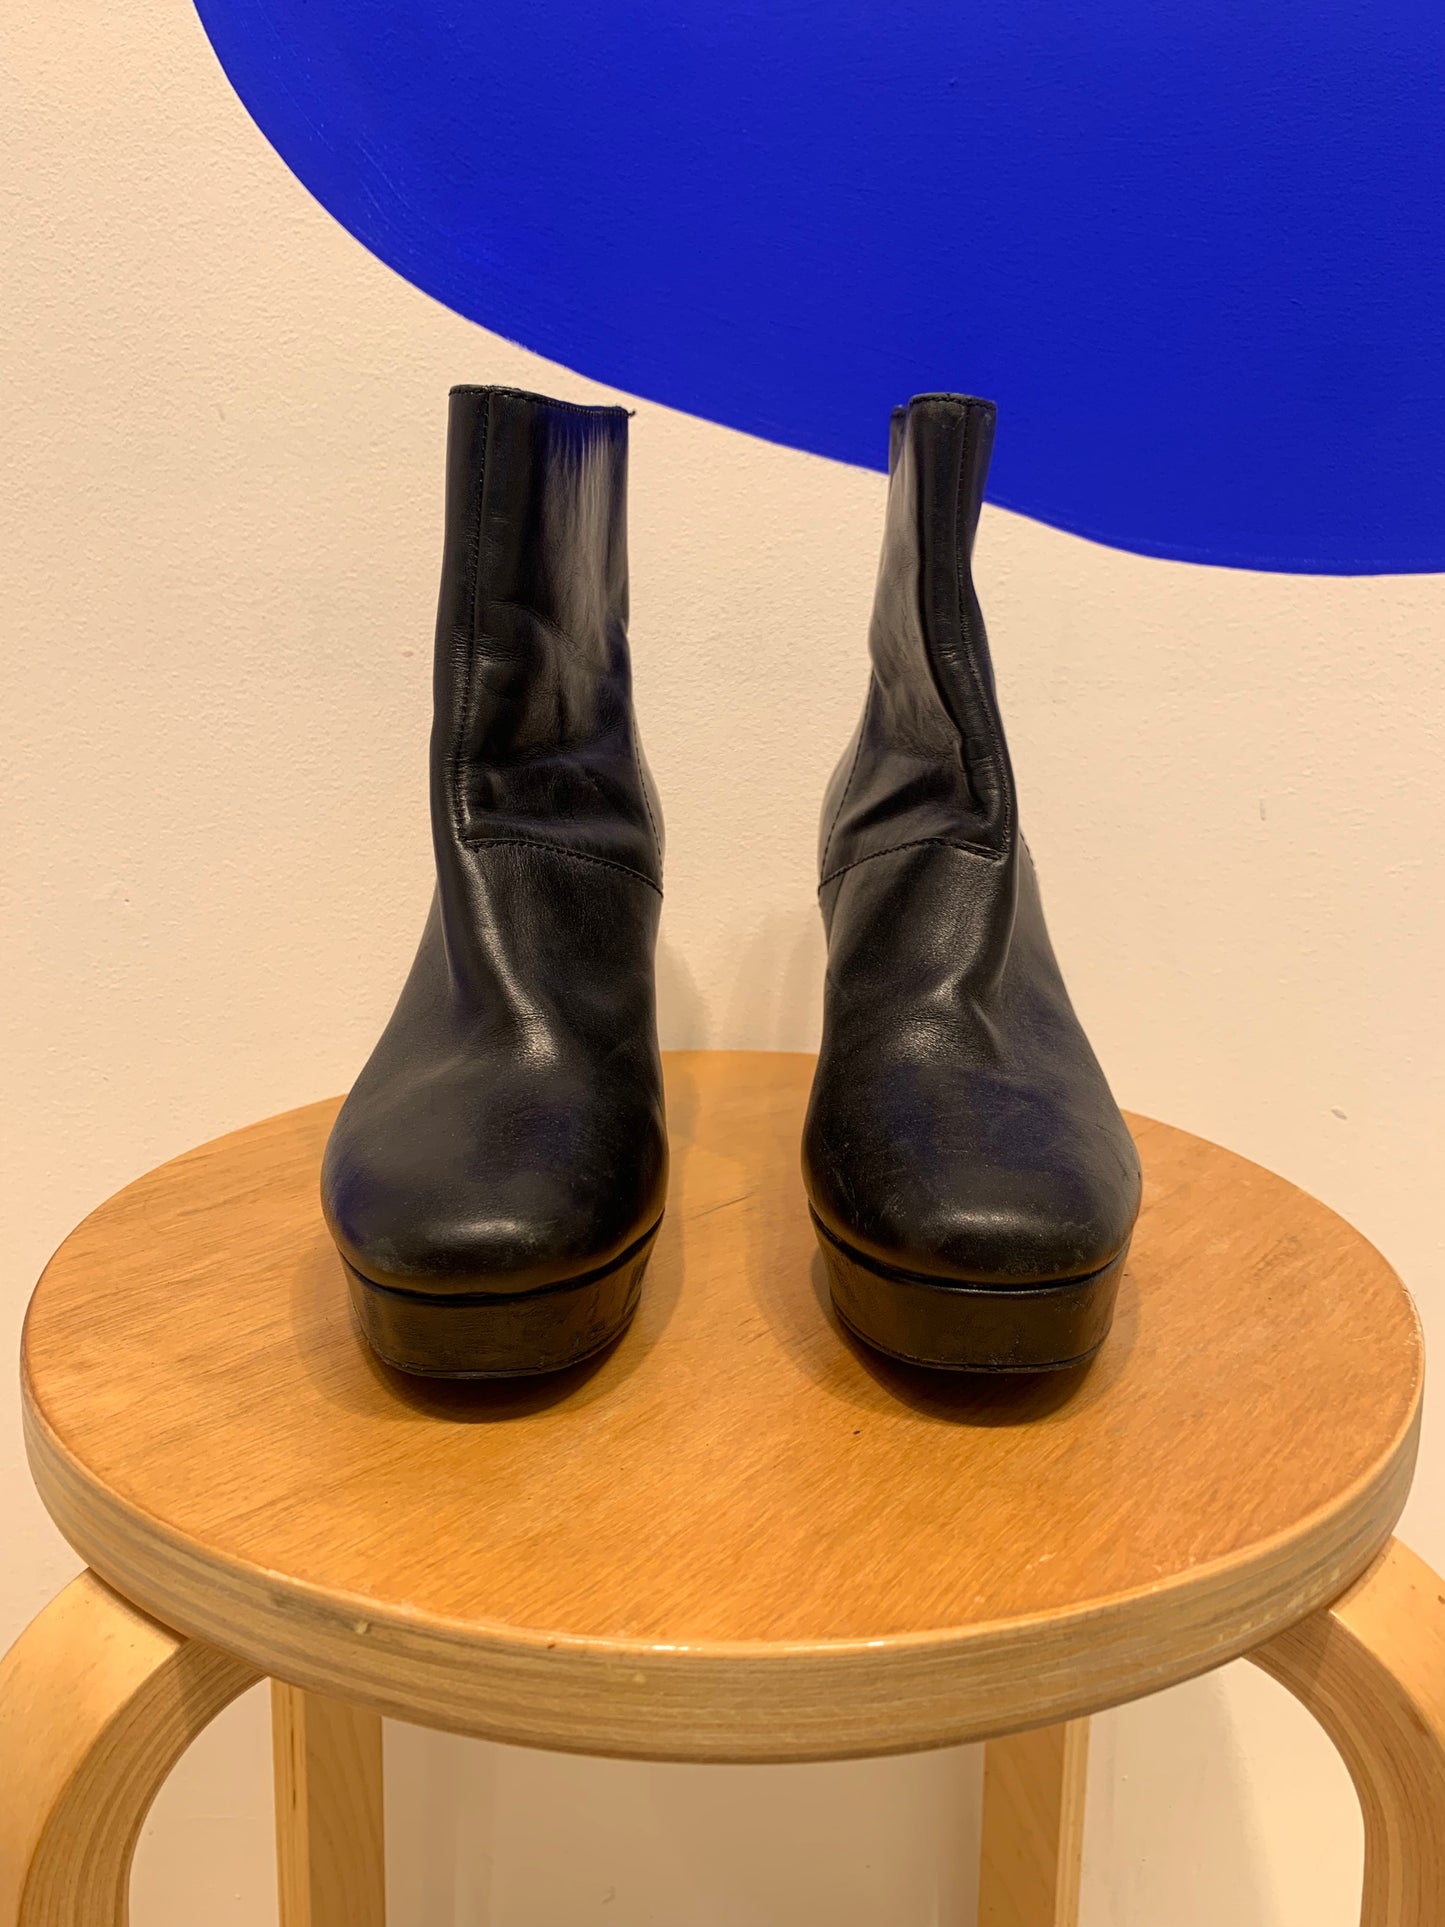 Steve Madden - Platform leather boots